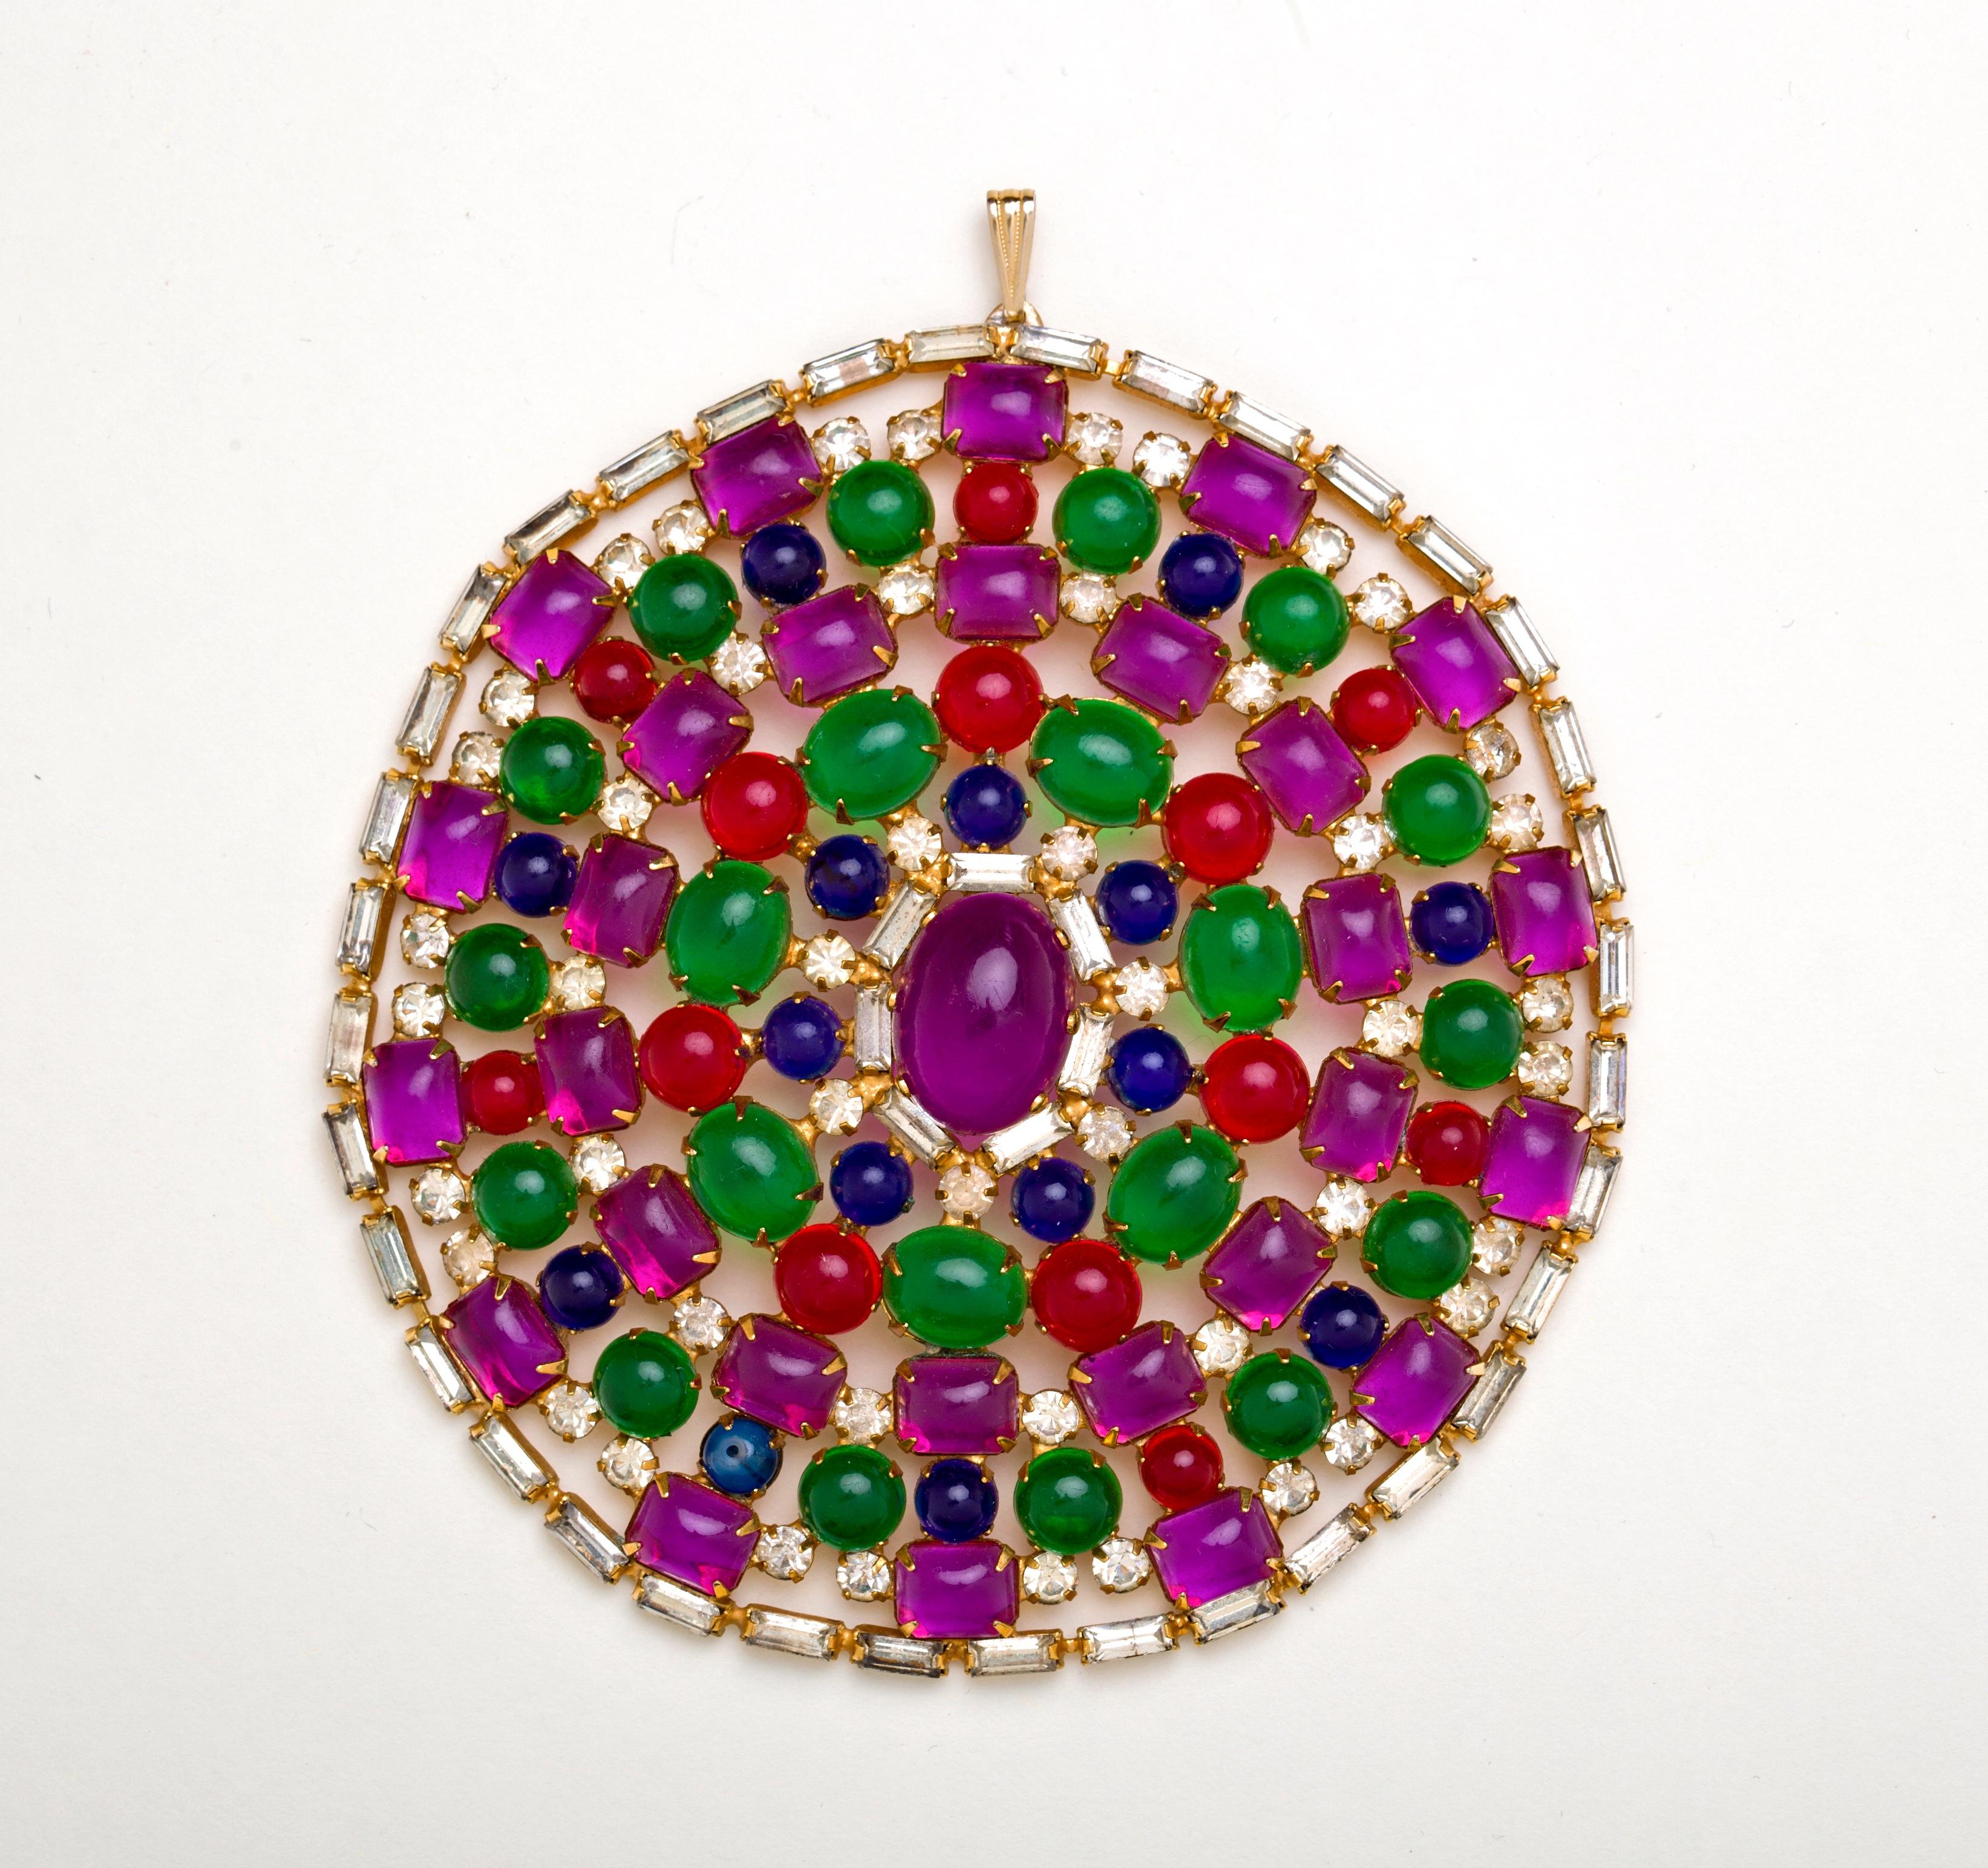 Étonnant et coloré, ce collier à cabochons K.J.L. de très grande taille provient de l'atelier K.J.L. de Providence, en 1967.  De faux cabochons d'améthyste, de rubis, de saphir et d'émeraude, montés de diamants ronds et baguettes, créent ce